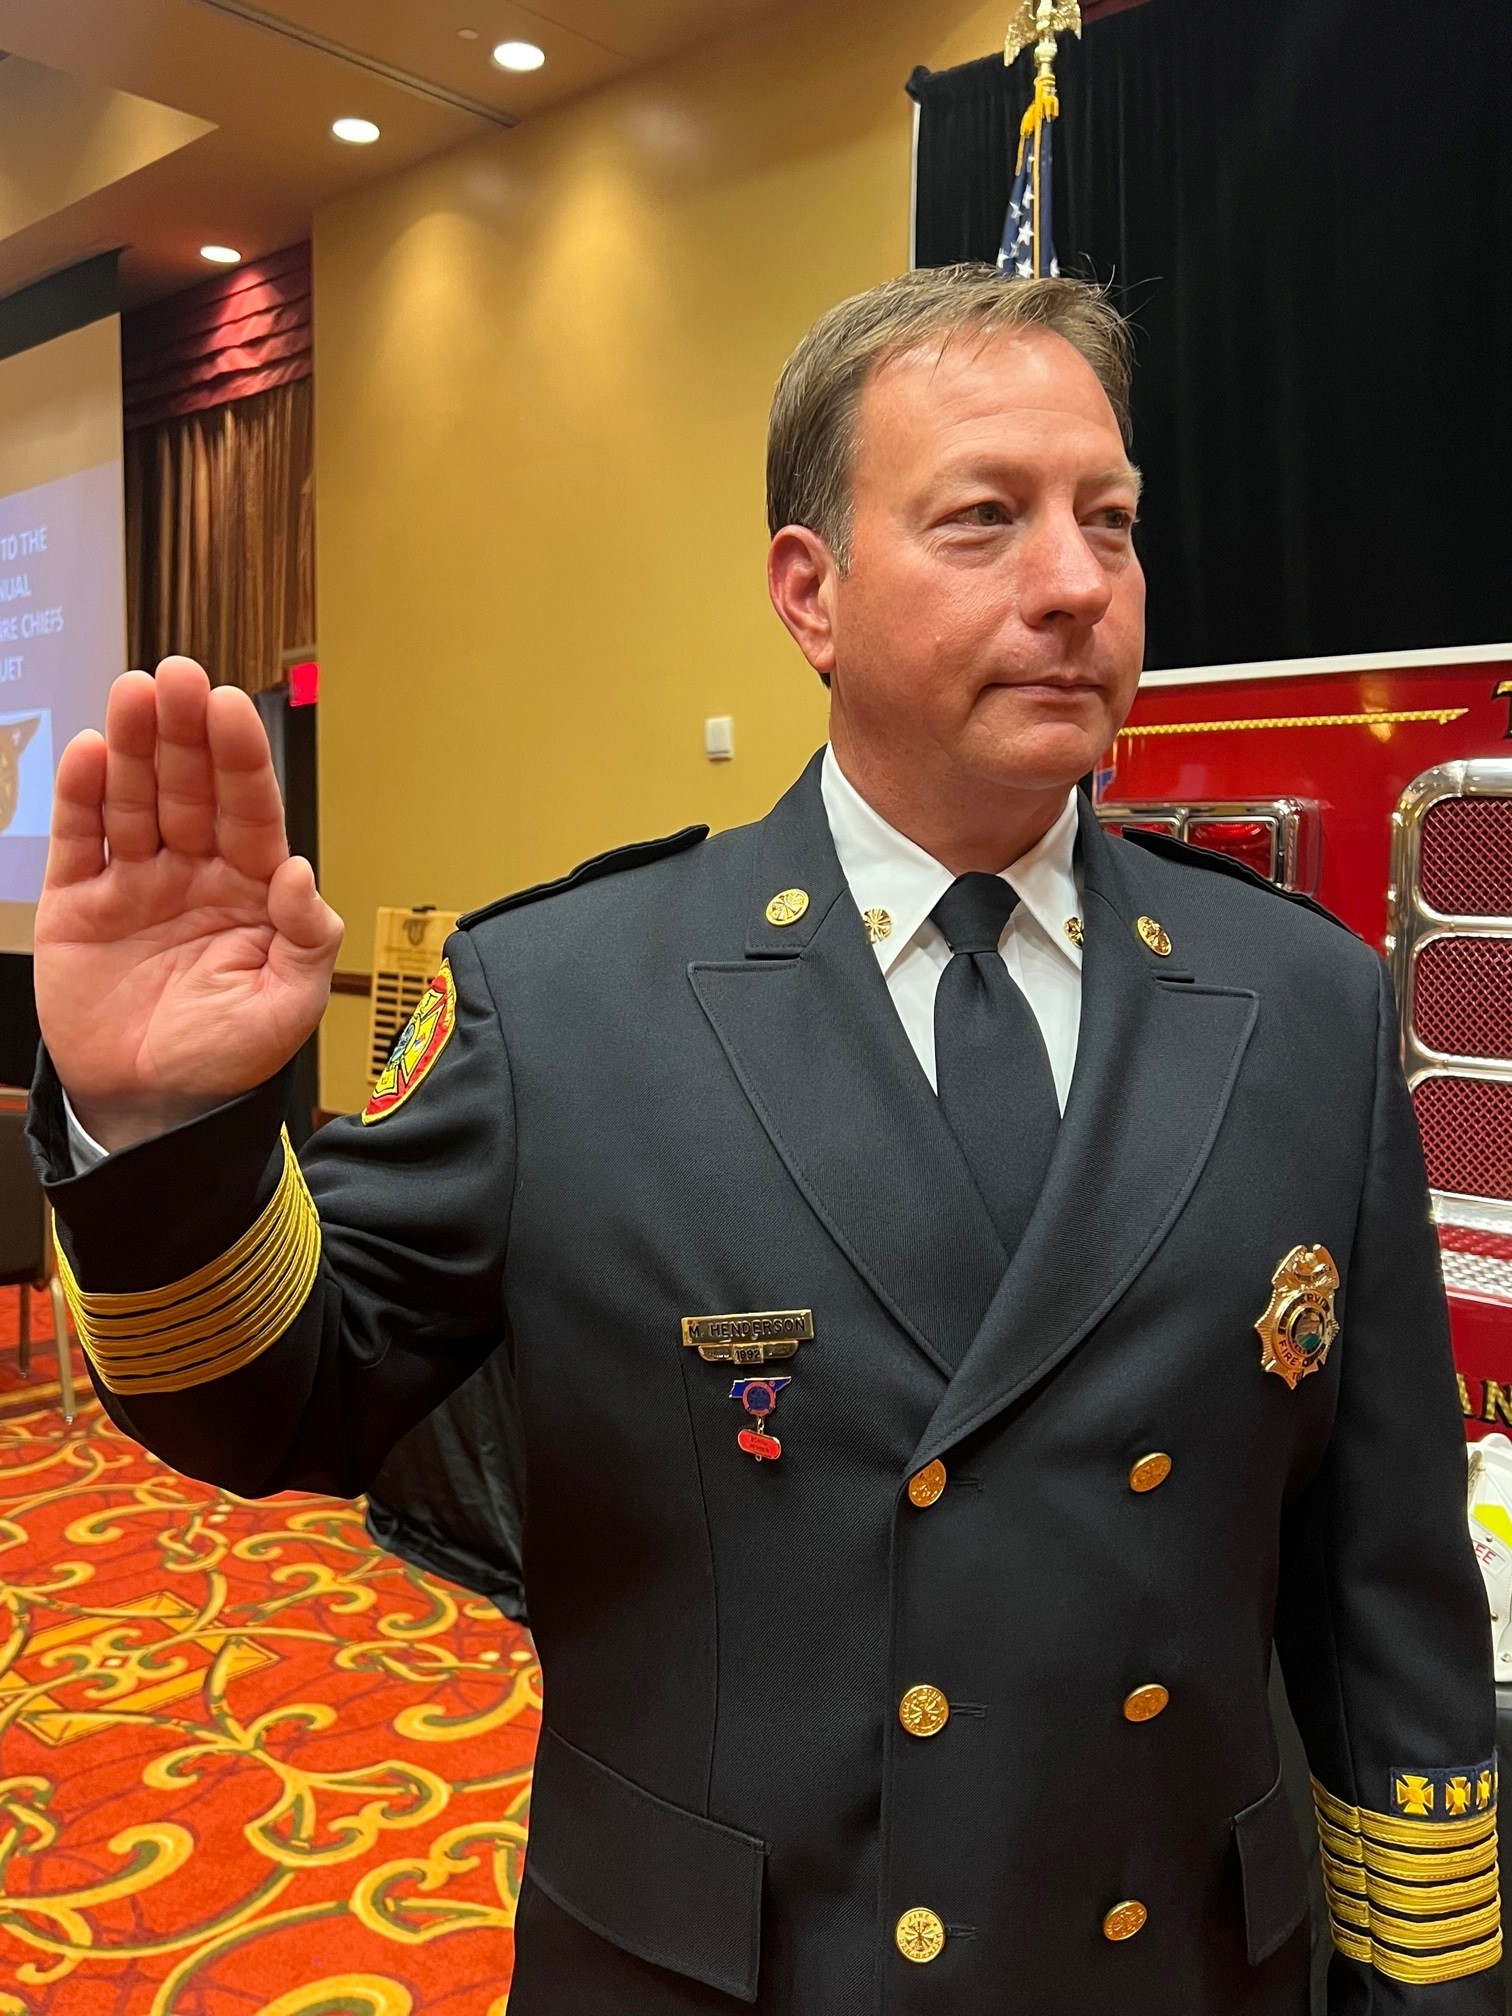 El jefe de bomberos de Sevierville es nombrado presidente de la asociación